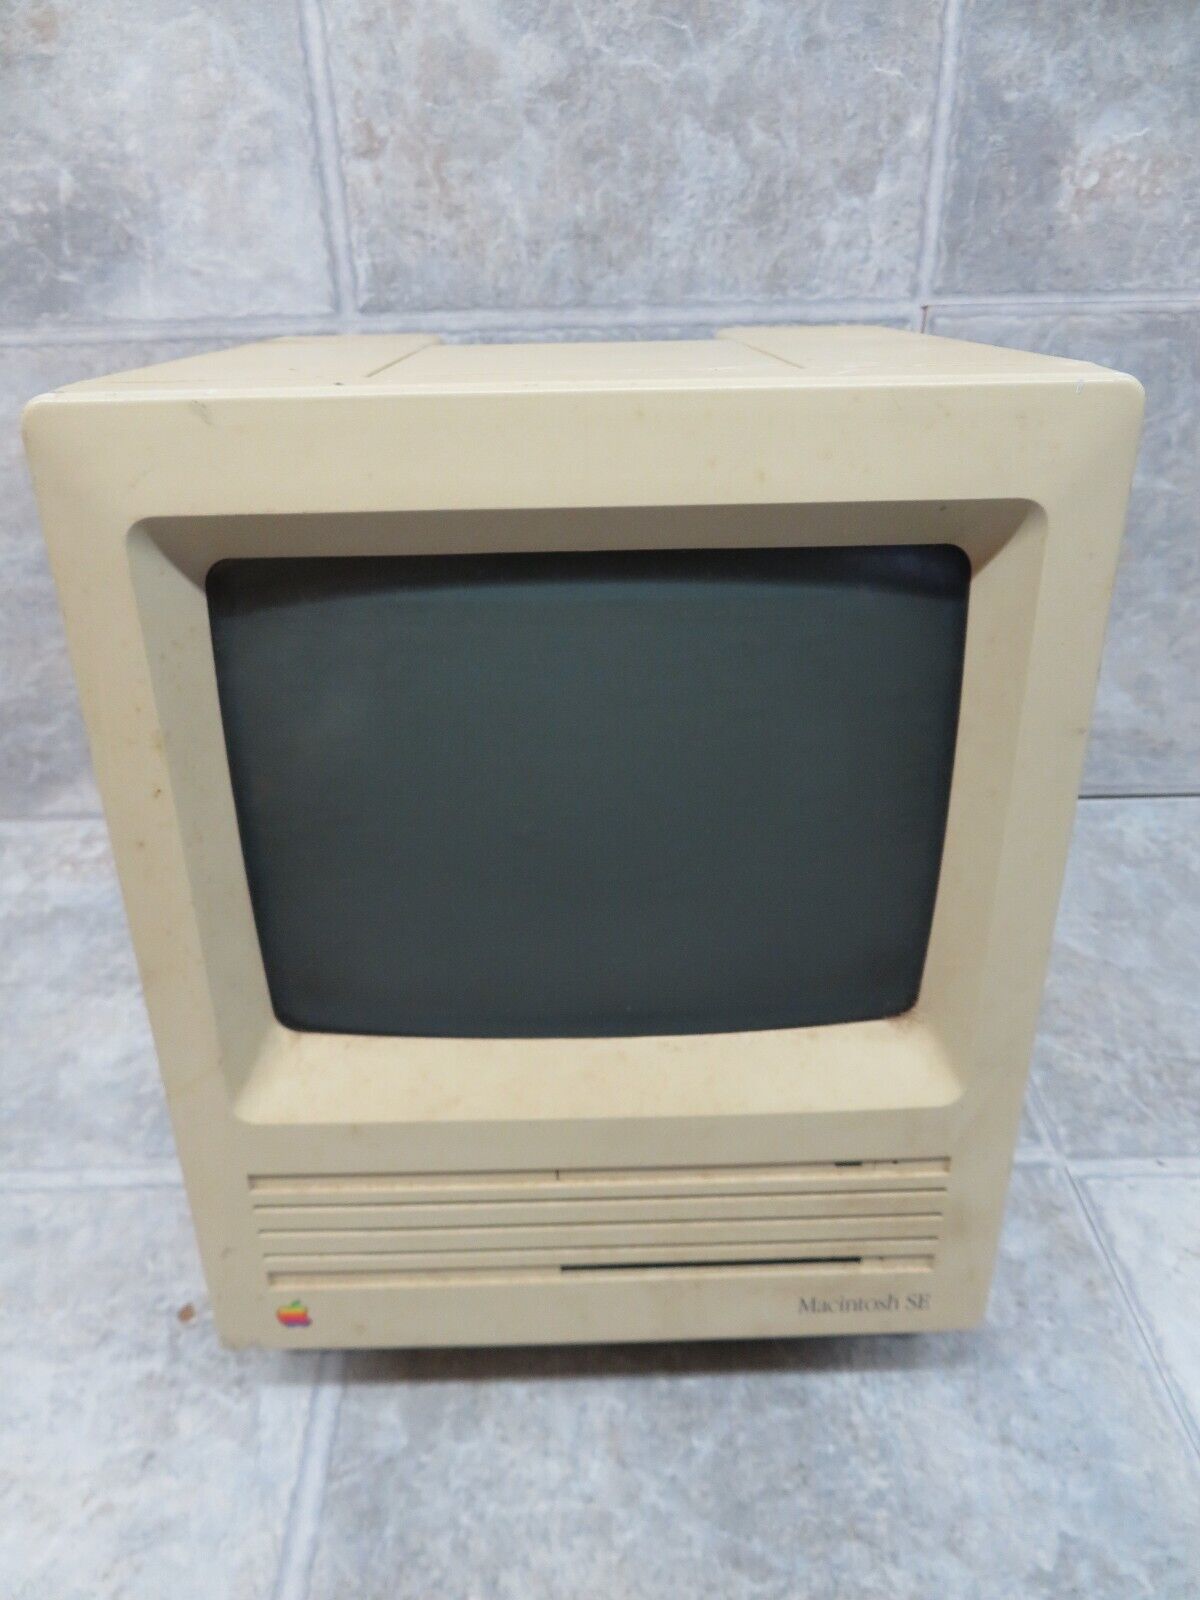 Apple Macintosh SE M5011 Vintage Computer - 1986 *Powers On*